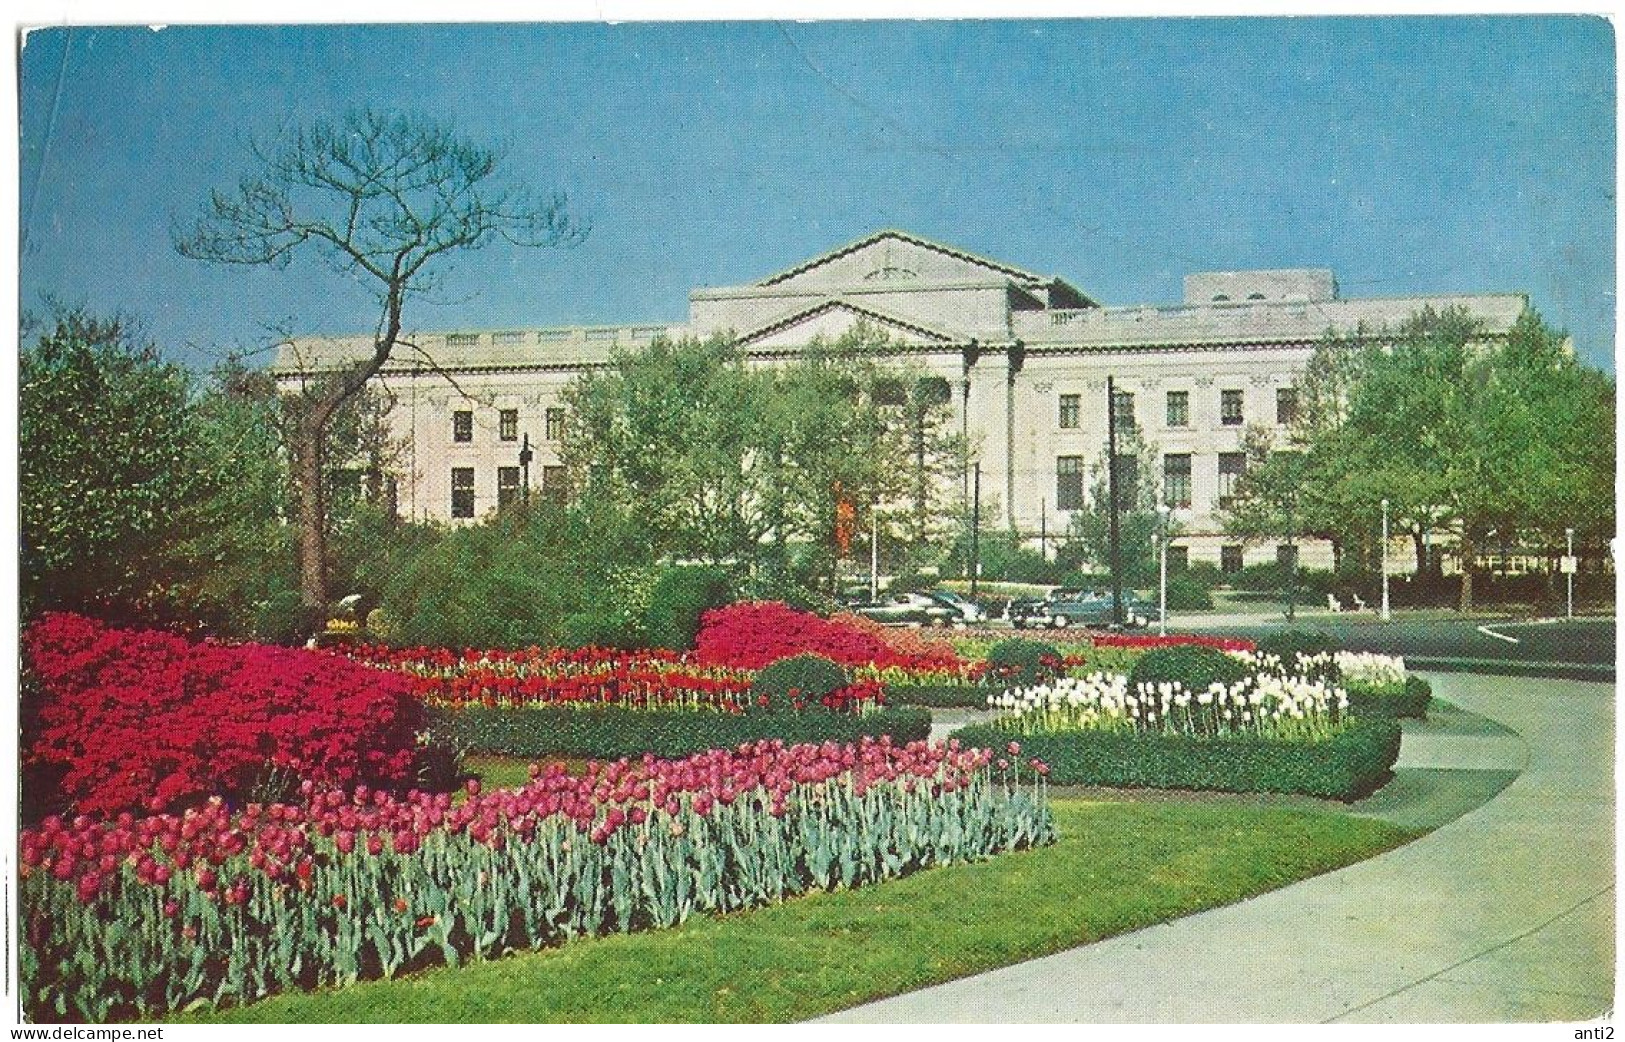 USA  Postal Card  The Franklin Institute And Benjamin Frankling Memorial, Philadelphia,  Unused Card  PHI-62 - Philadelphia